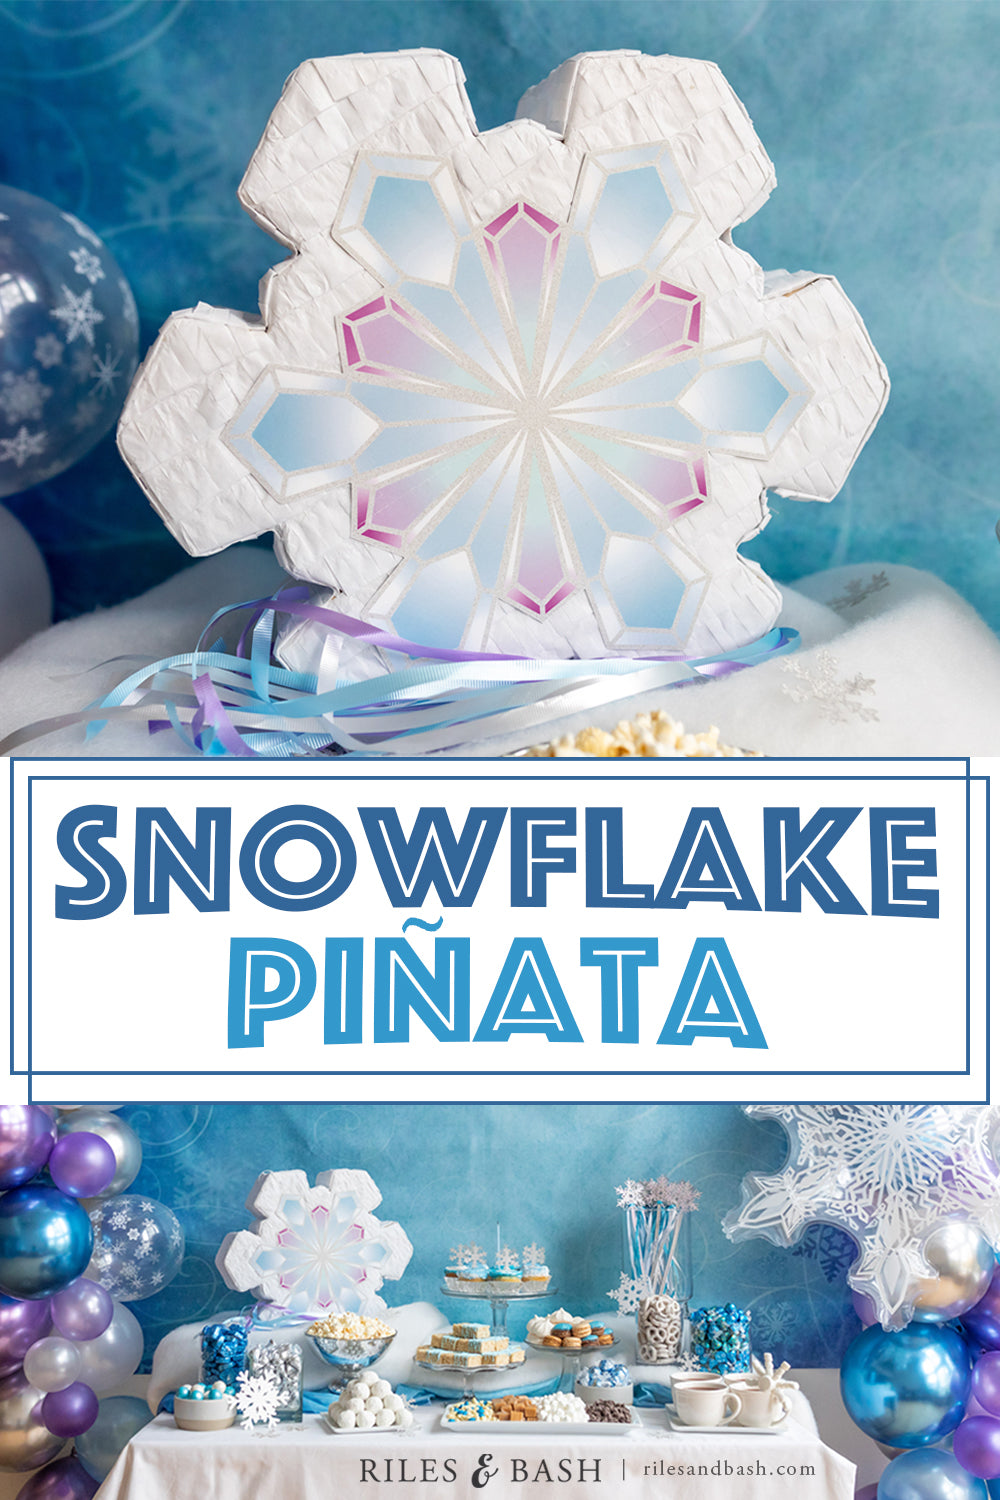 Riles & Bash Snowflake Pinata